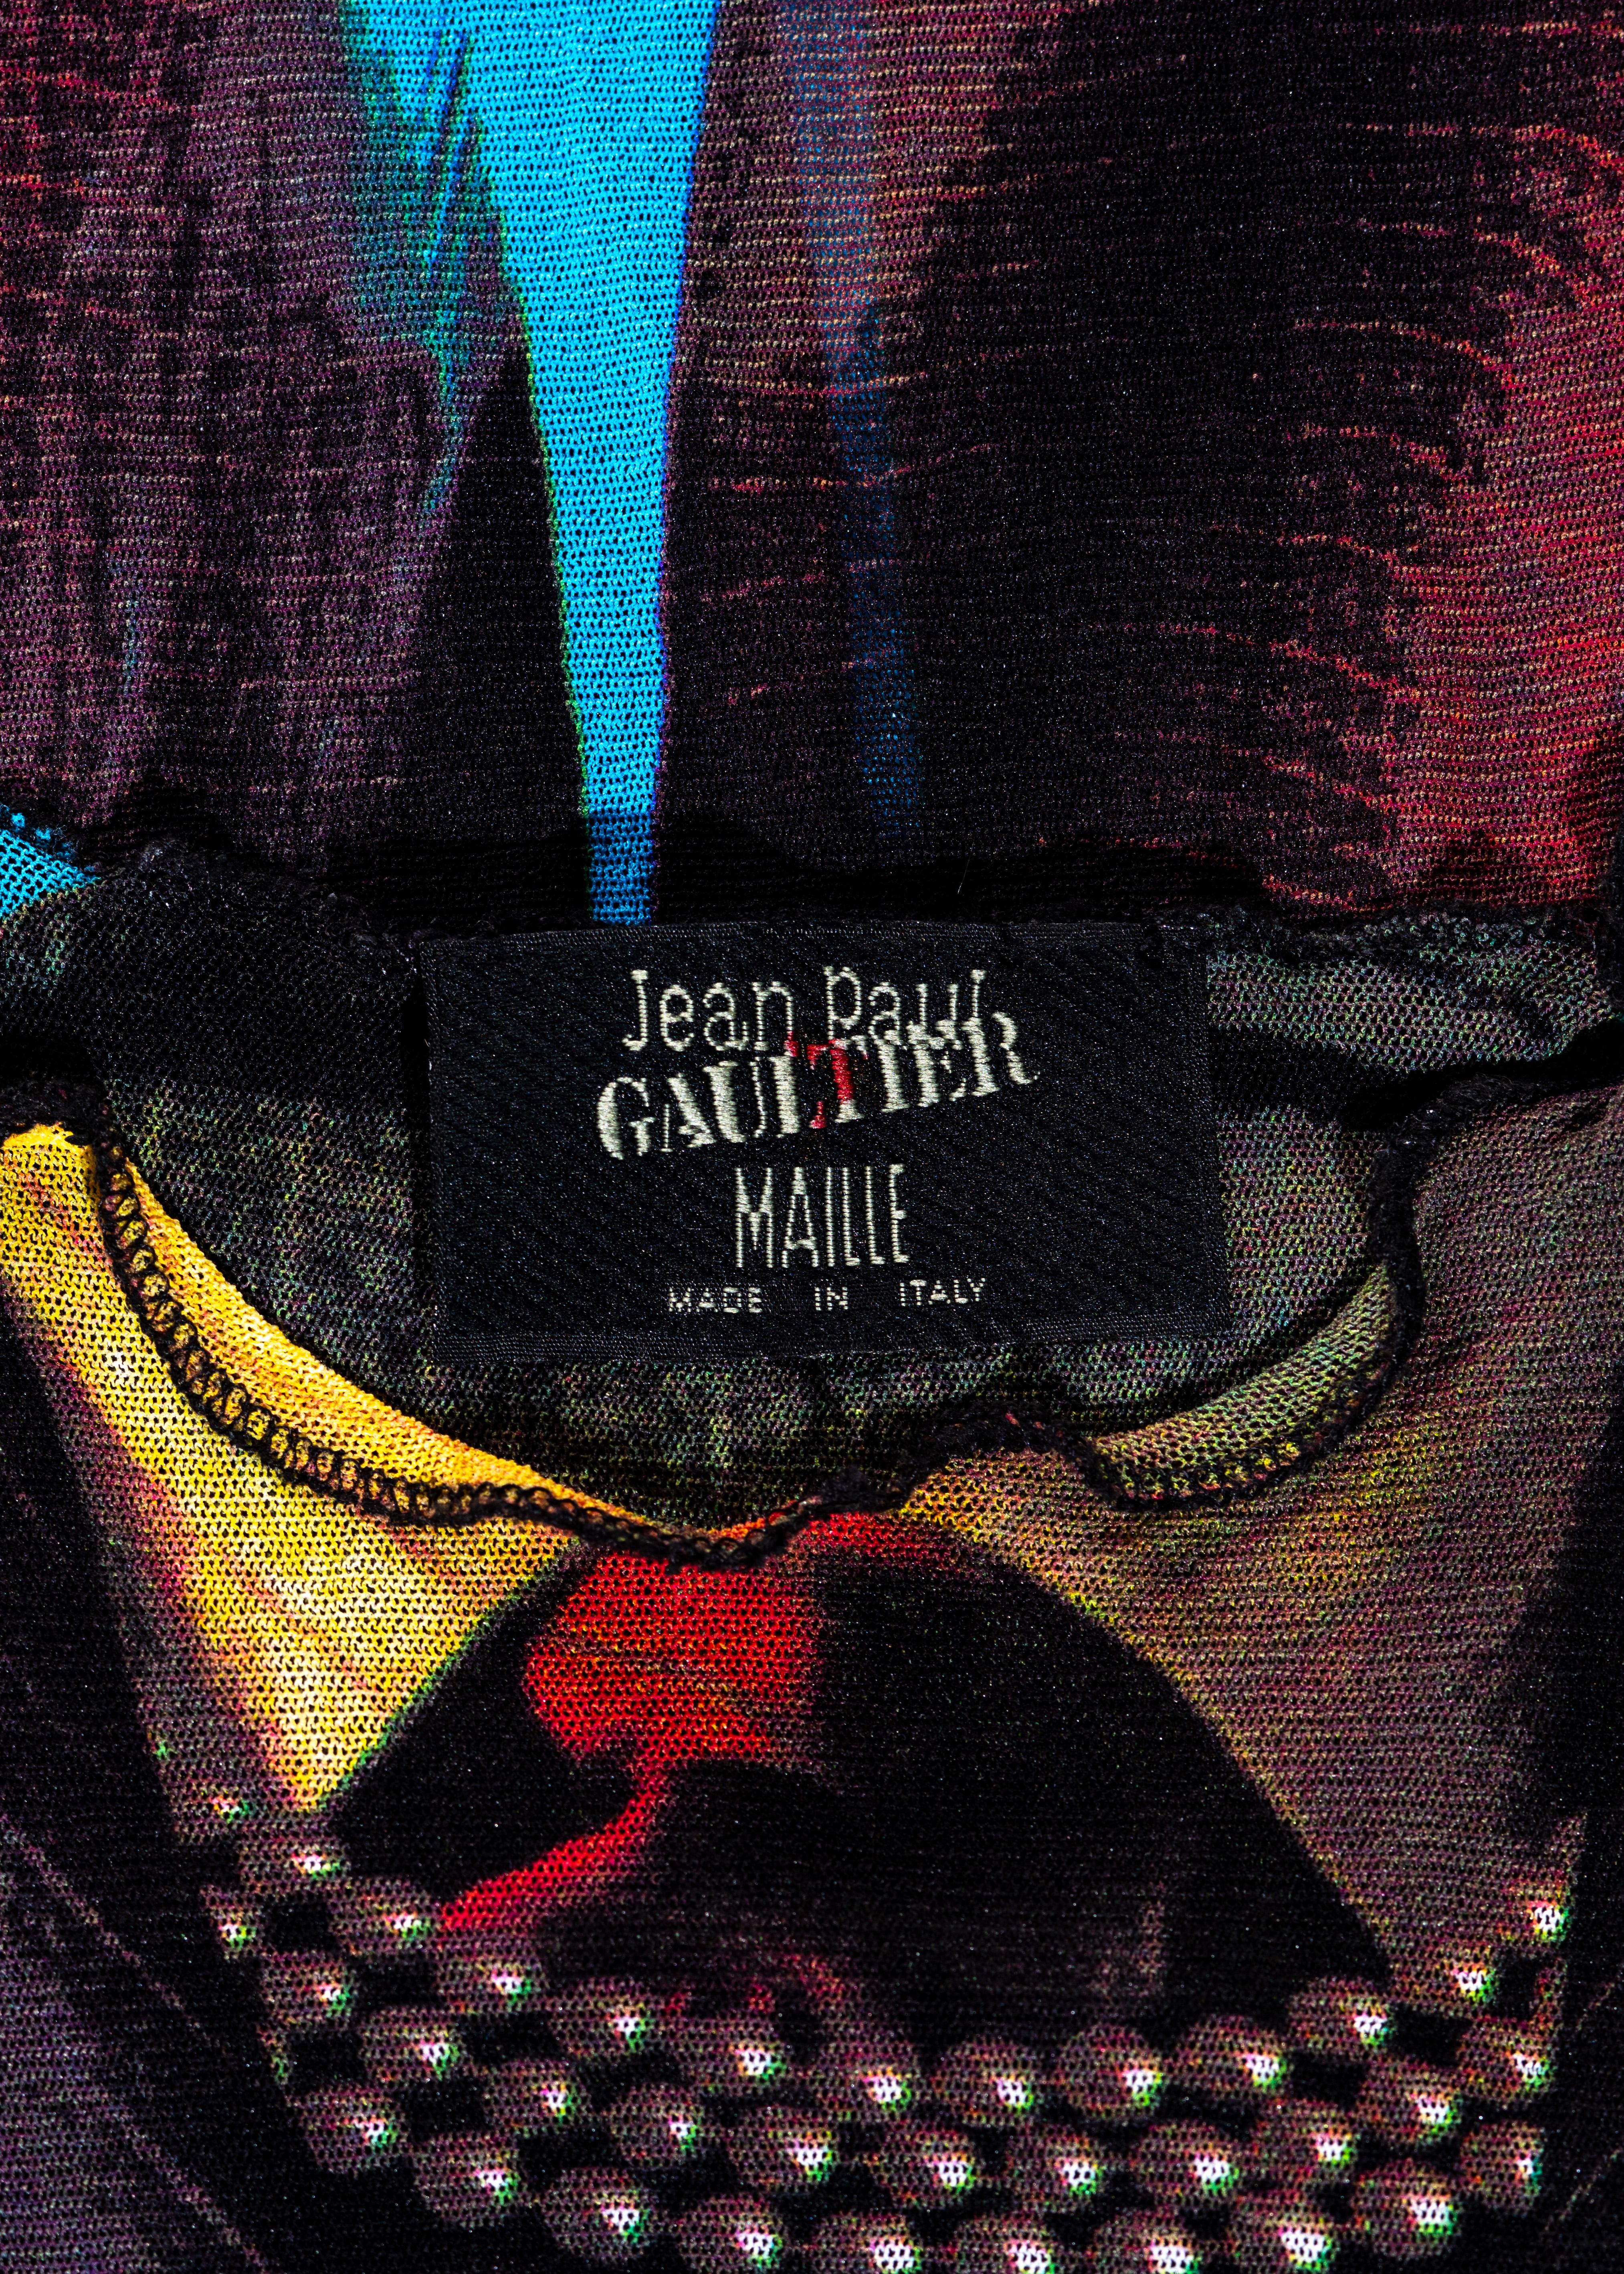 Jean Paul Gaultier trompe l'œil print dress, leggings and pants set, ss 1997 5